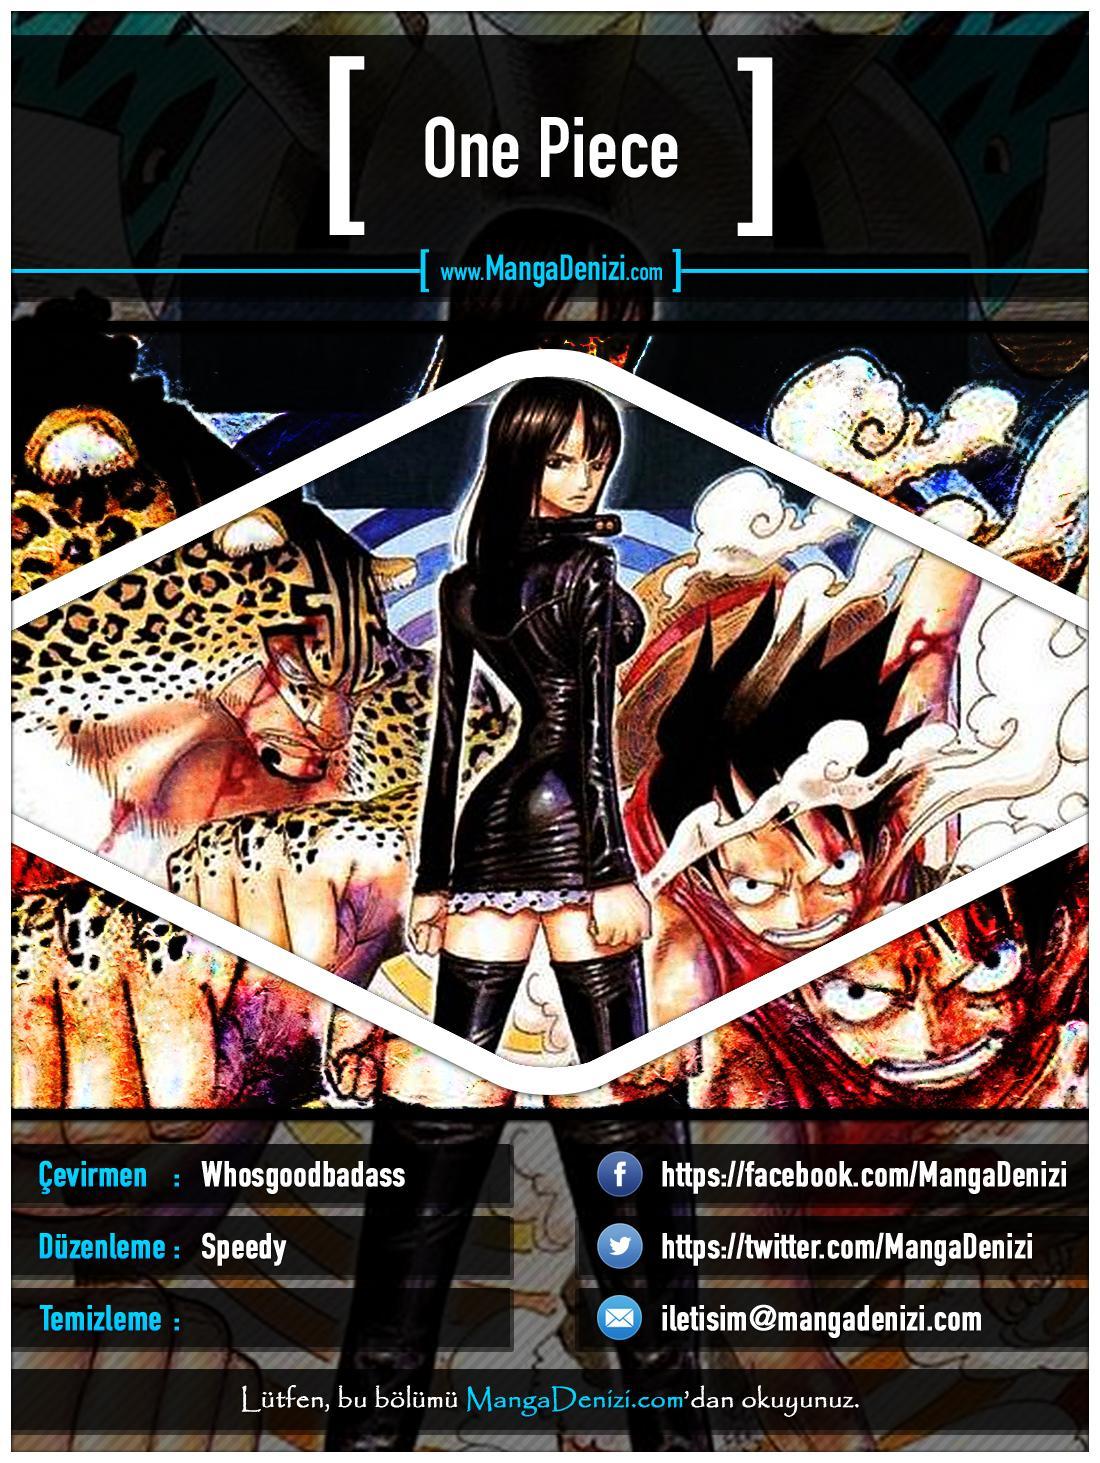 One Piece [Renkli] mangasının 0325 bölümünün 1. sayfasını okuyorsunuz.